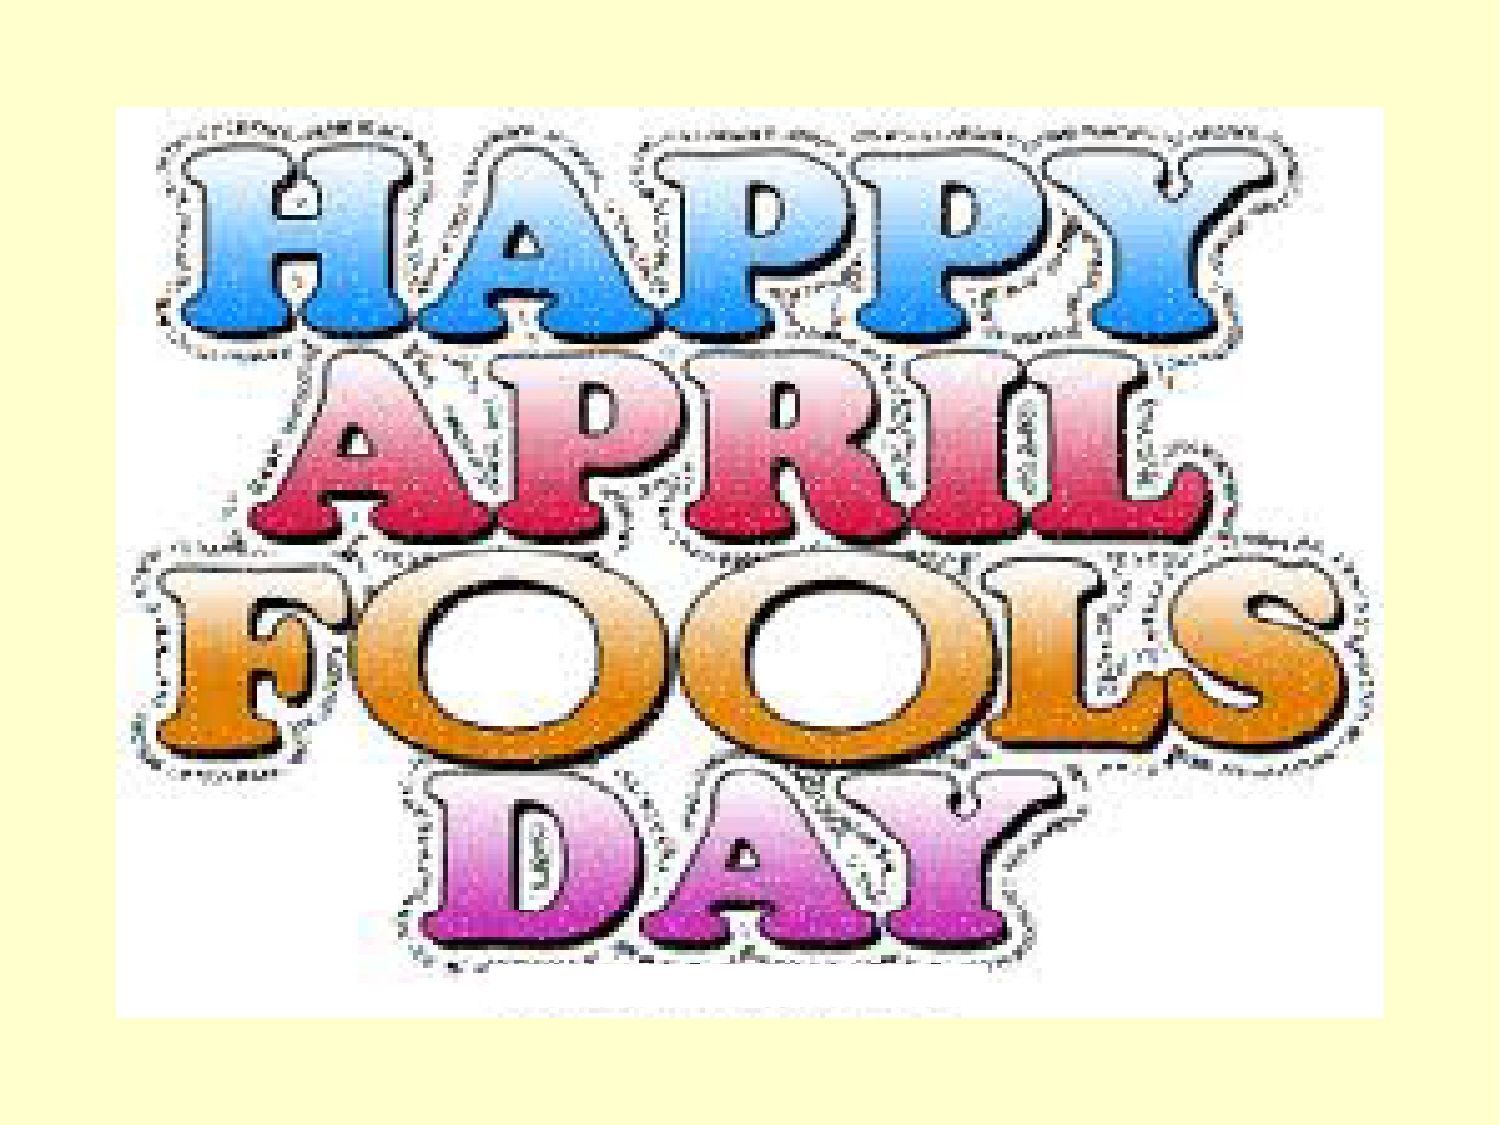 APRIL. Funny april fools pranks, April fools joke, April fools day